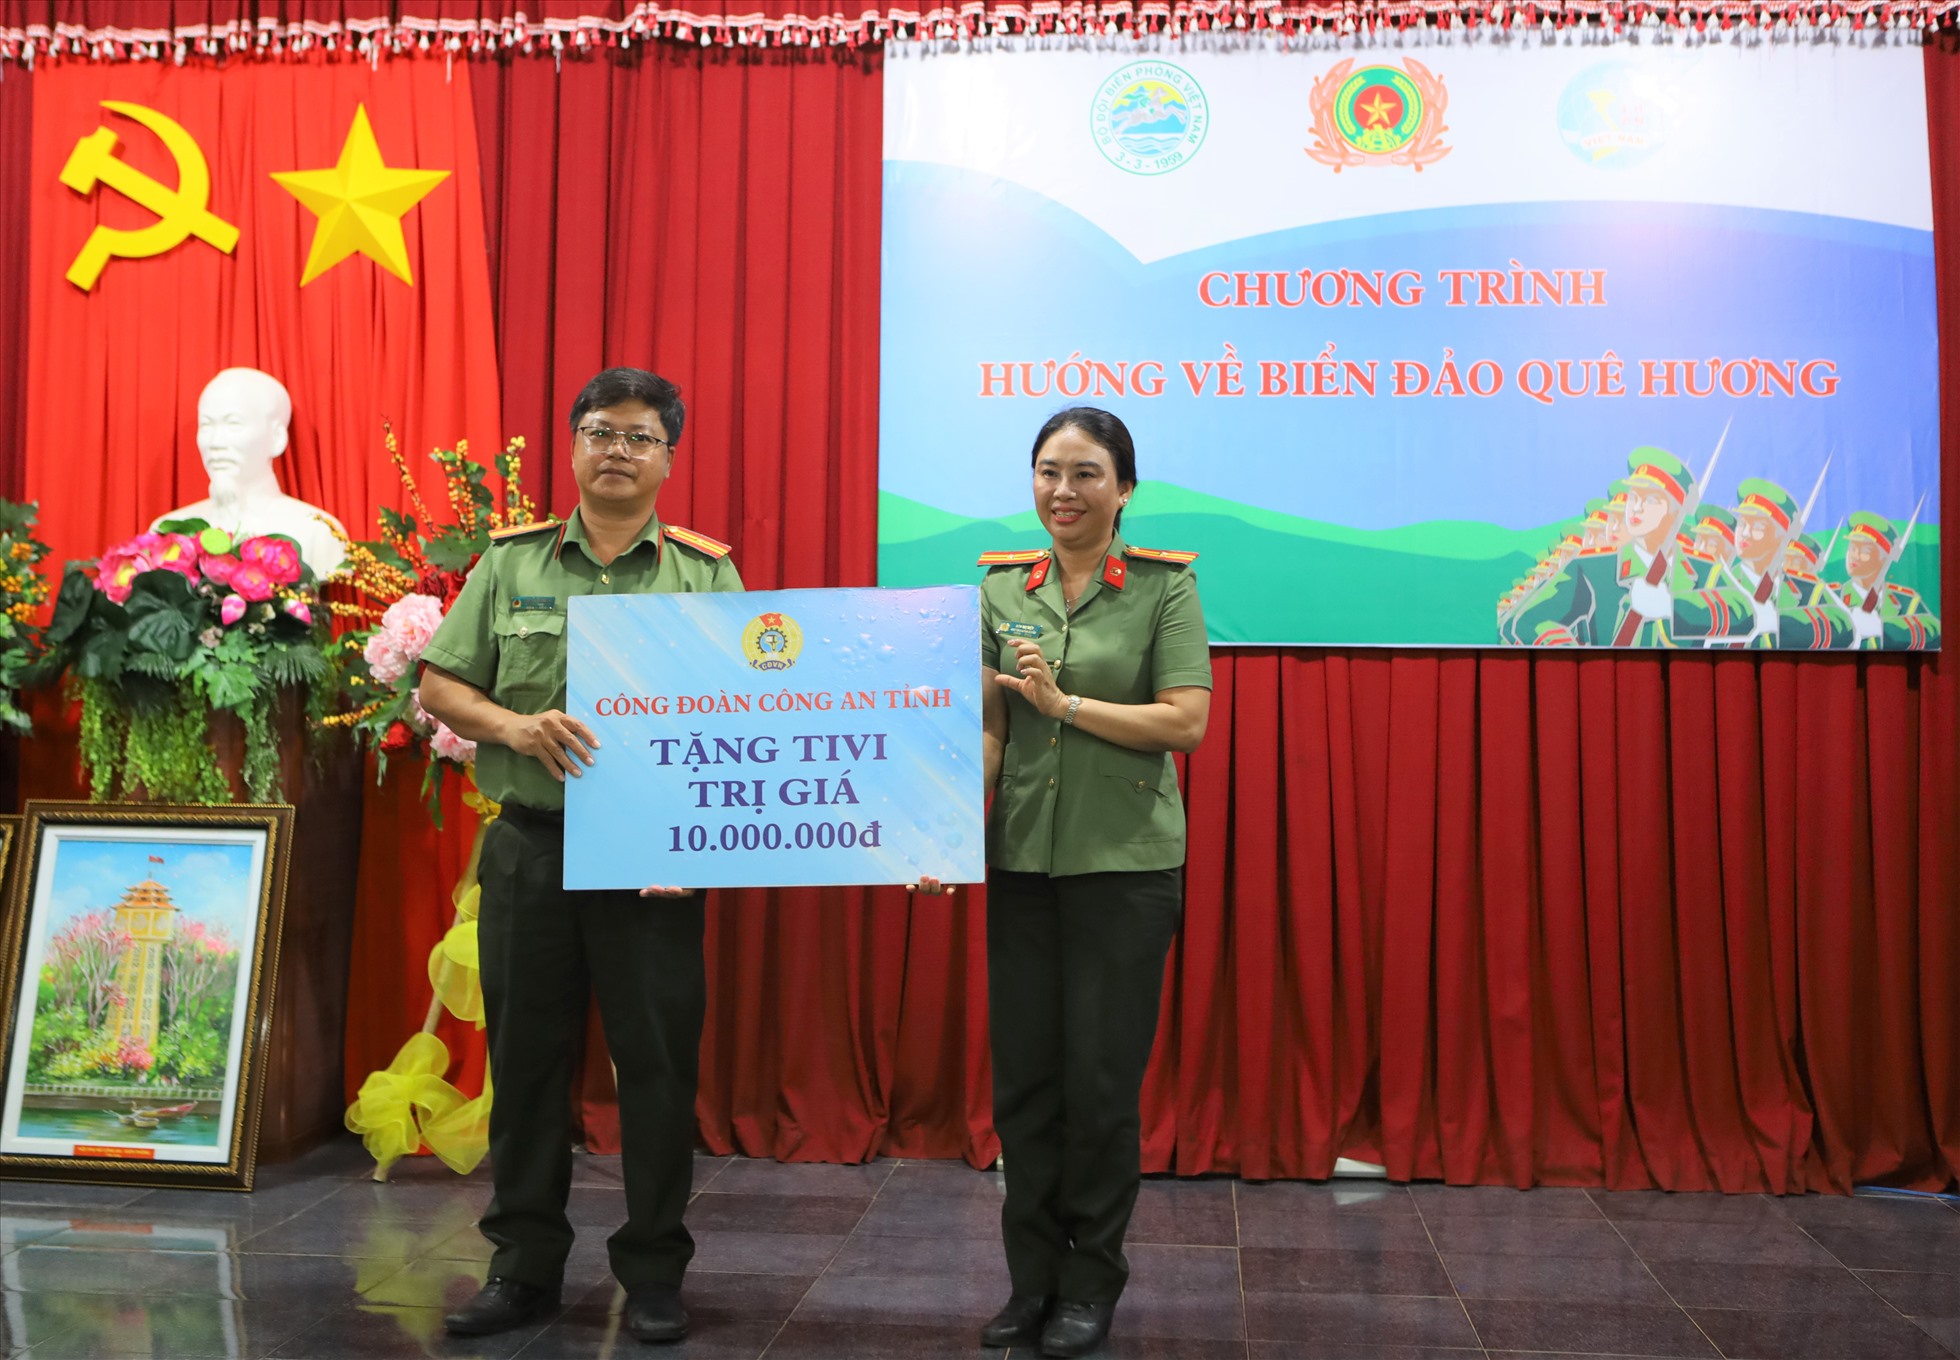 Thiếu tá Đào Thị Tiệp, chủ tịch Công đoàn Công an tỉnh Bình Thuận trao tặng bảng tượng trưng 1 chiếc tivi cho đại diện Công an huyện Phú Quý. Ảnh: Duy Tuấn